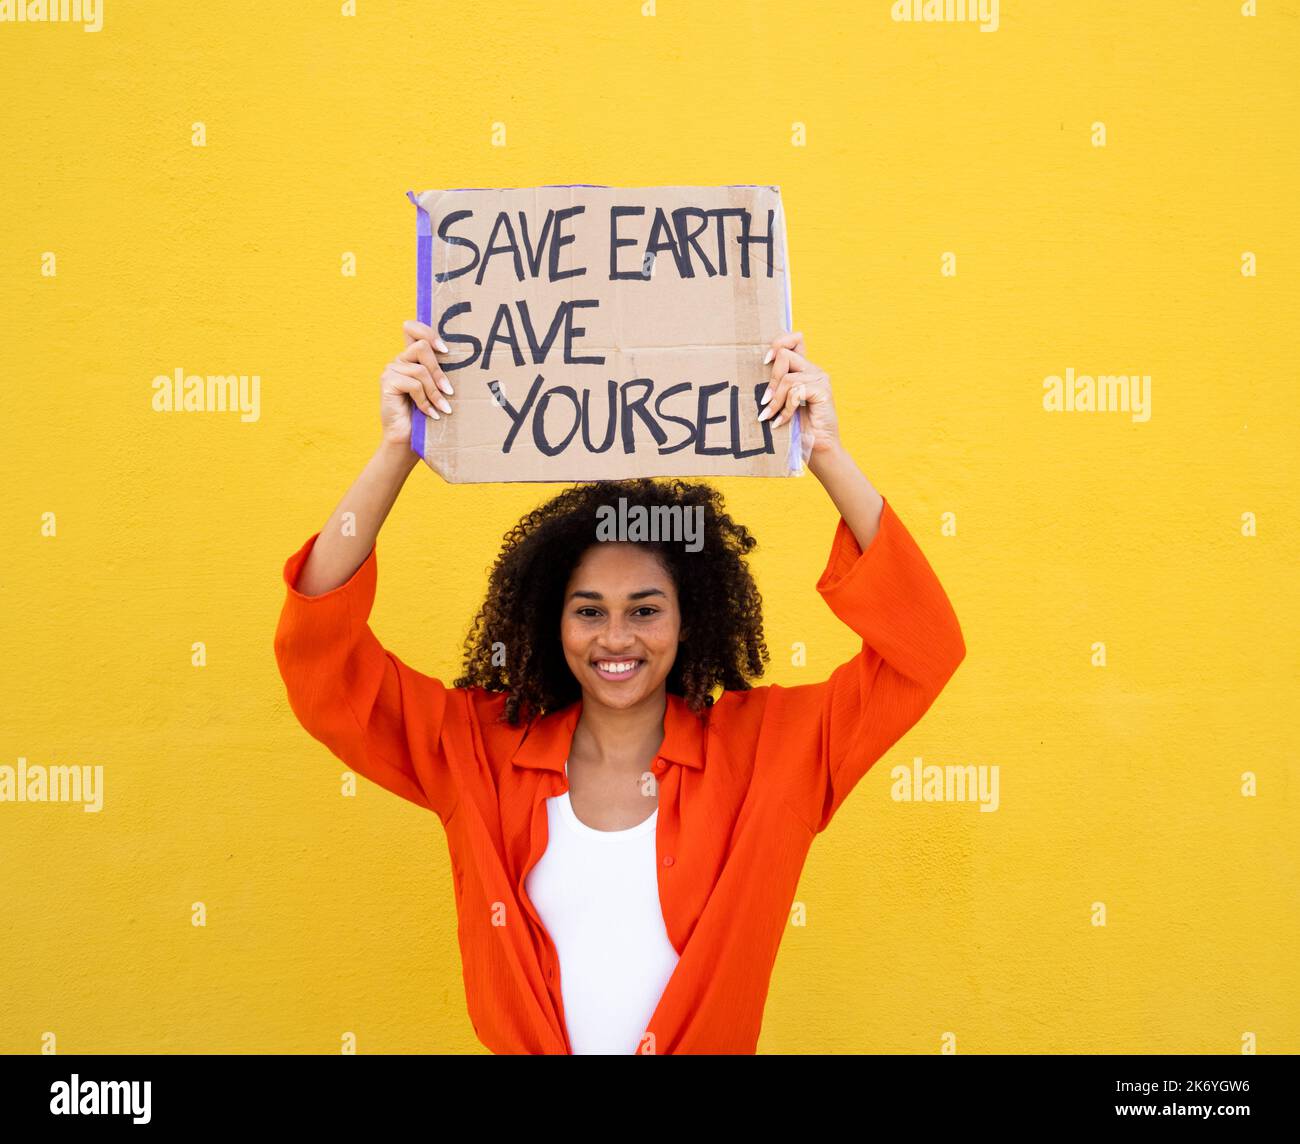 Fröhliche afroamerikanische junge Frau mit einem Schild, das sagt: Rette die Erde rette dich selbst. Umweltschutz, nicht Planet b Stockfoto